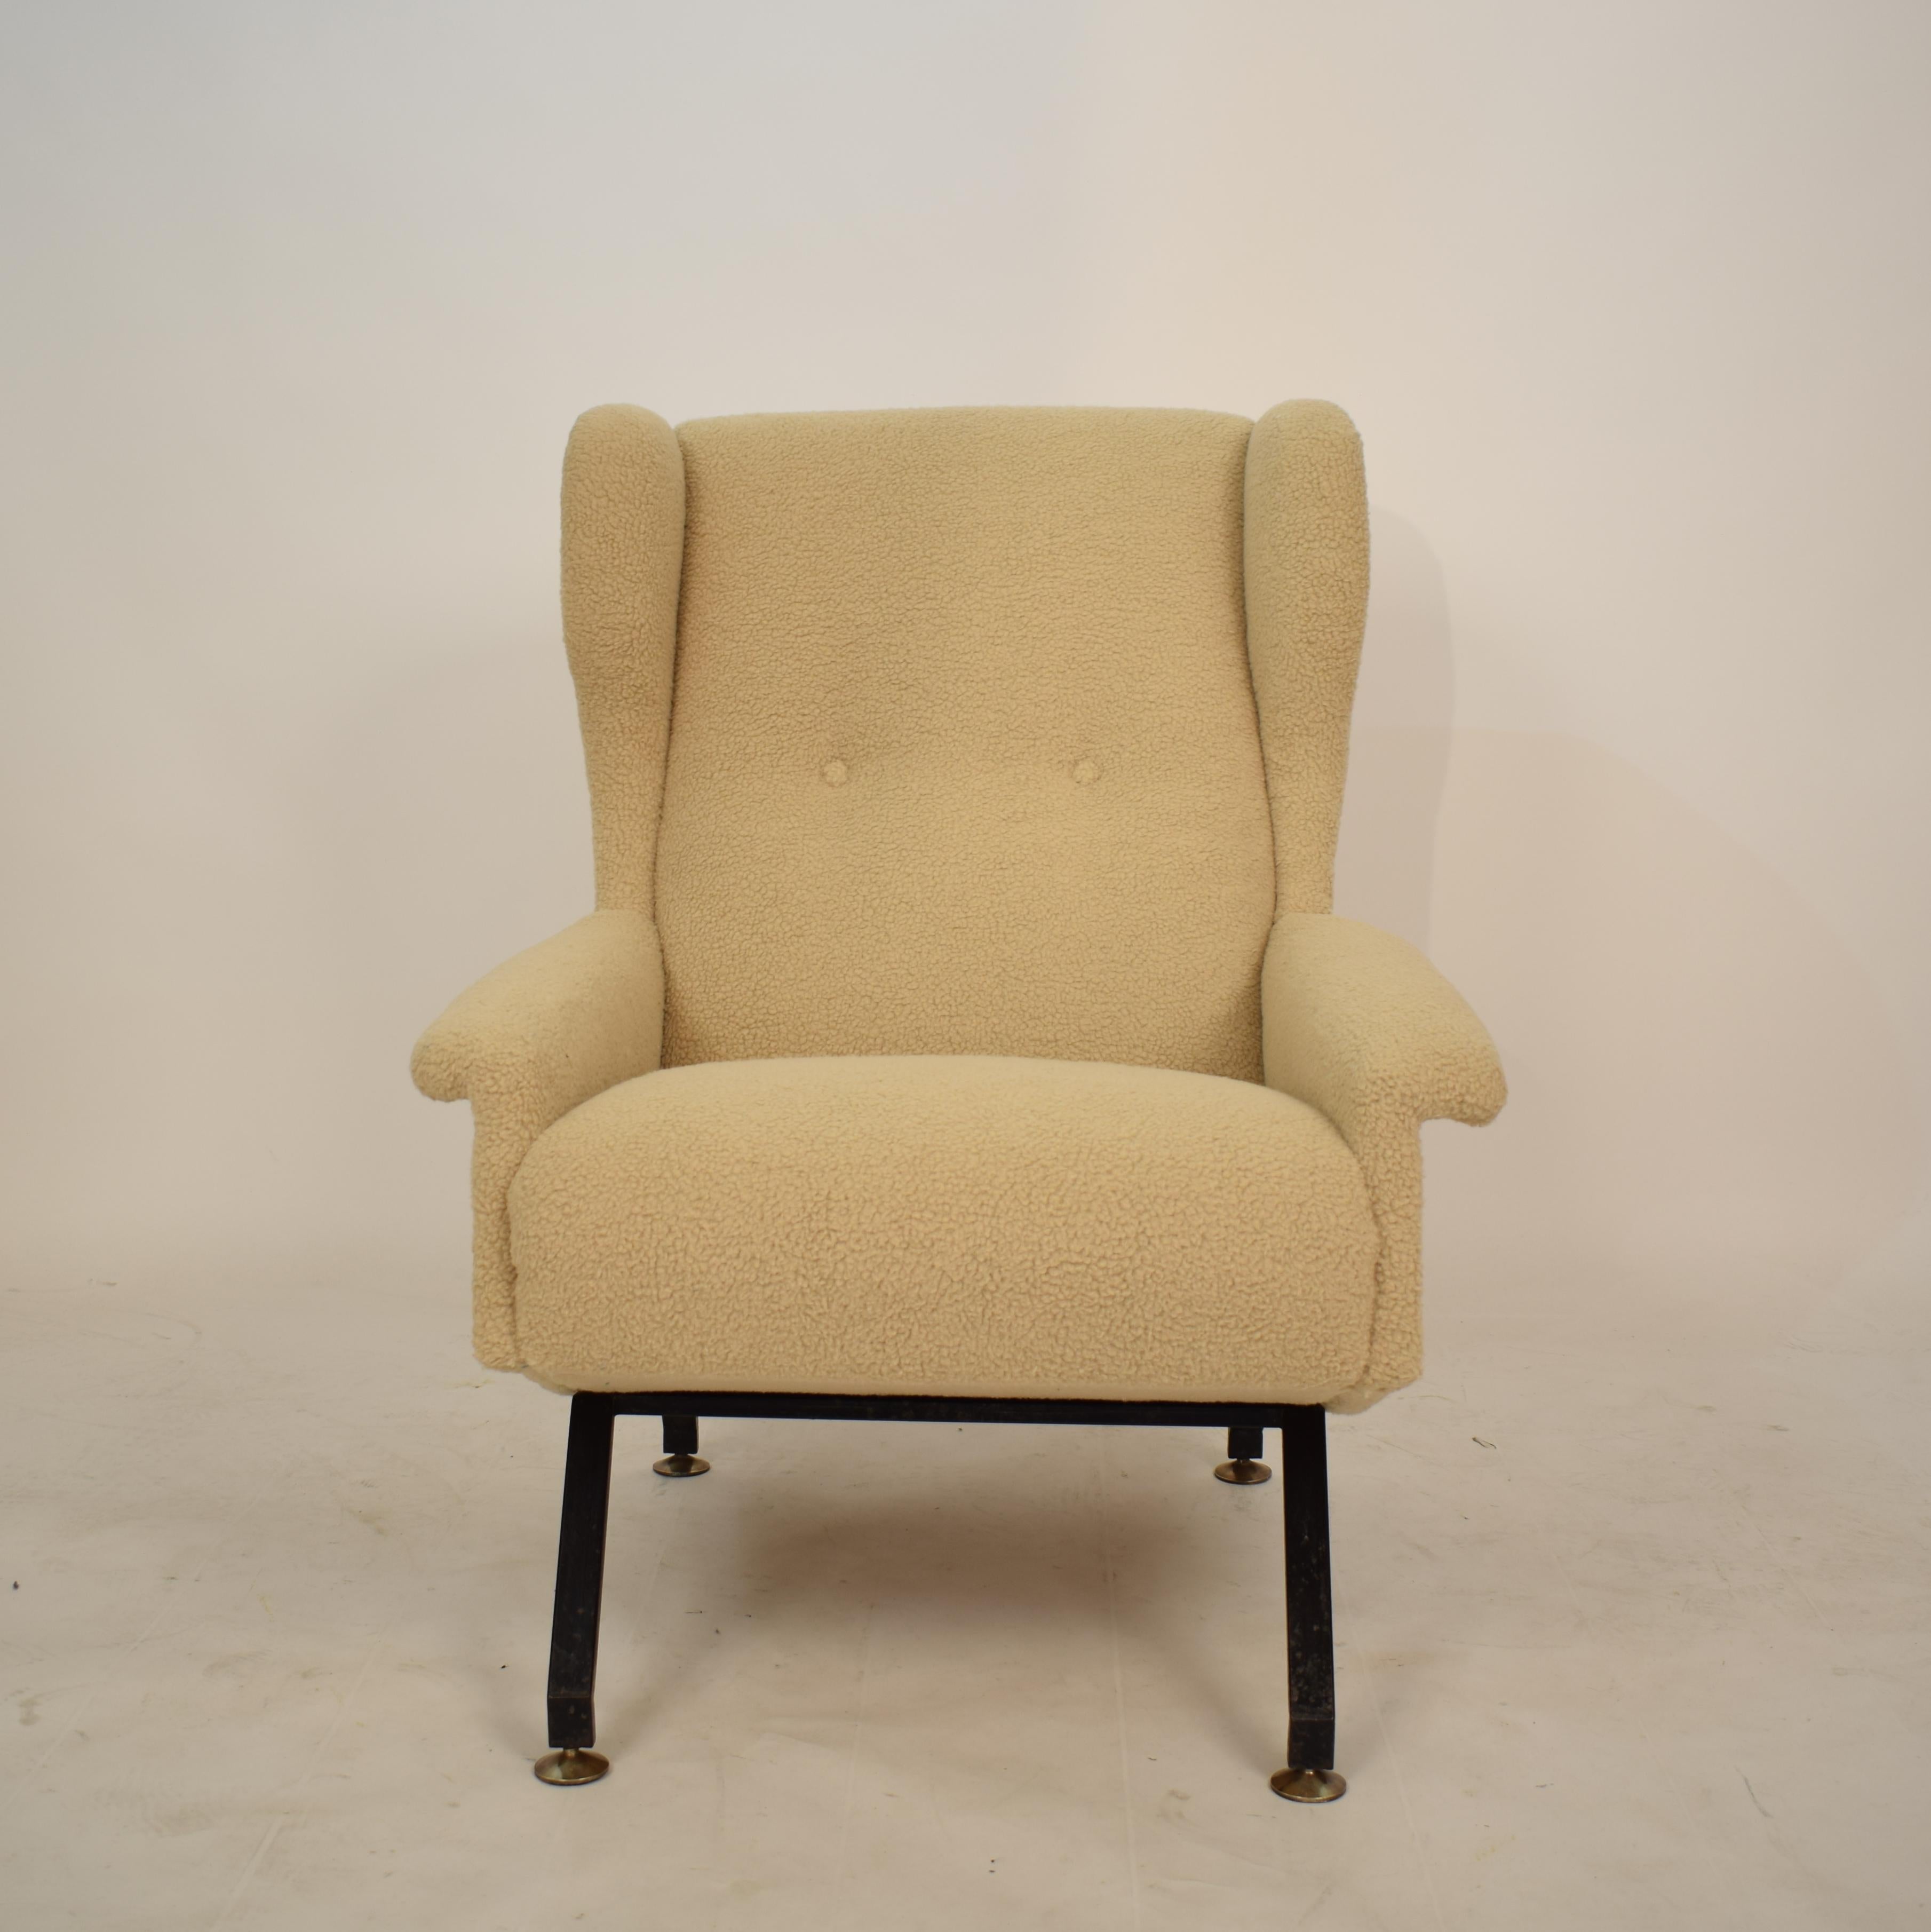 Metal Midcentury Italian Armchair Lounge Chair in Beige Sandy Sheep Wool Fabric, 1950